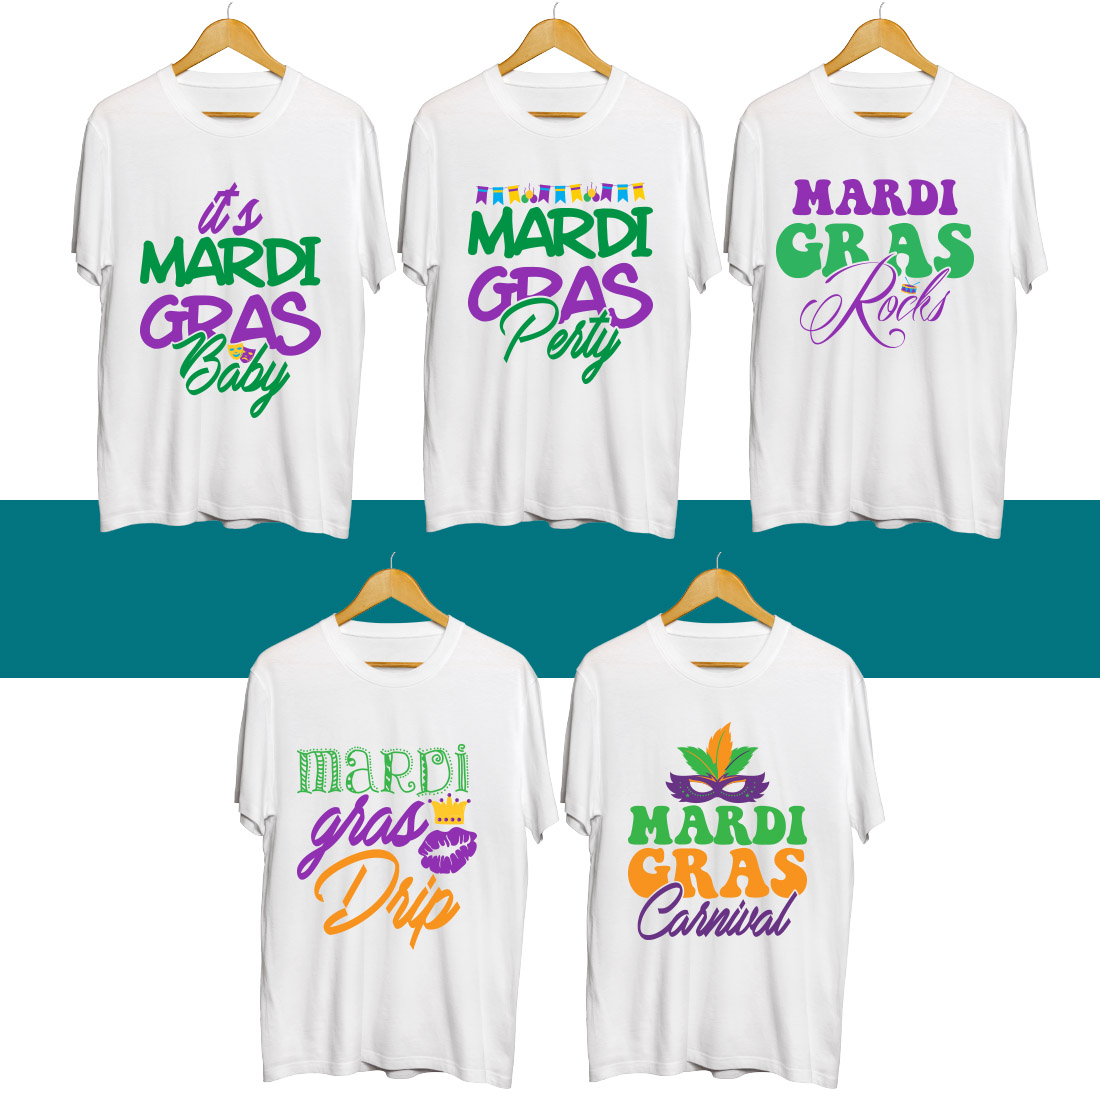 Mardi Gras SVG T Shirt Designs Bundle preview image.